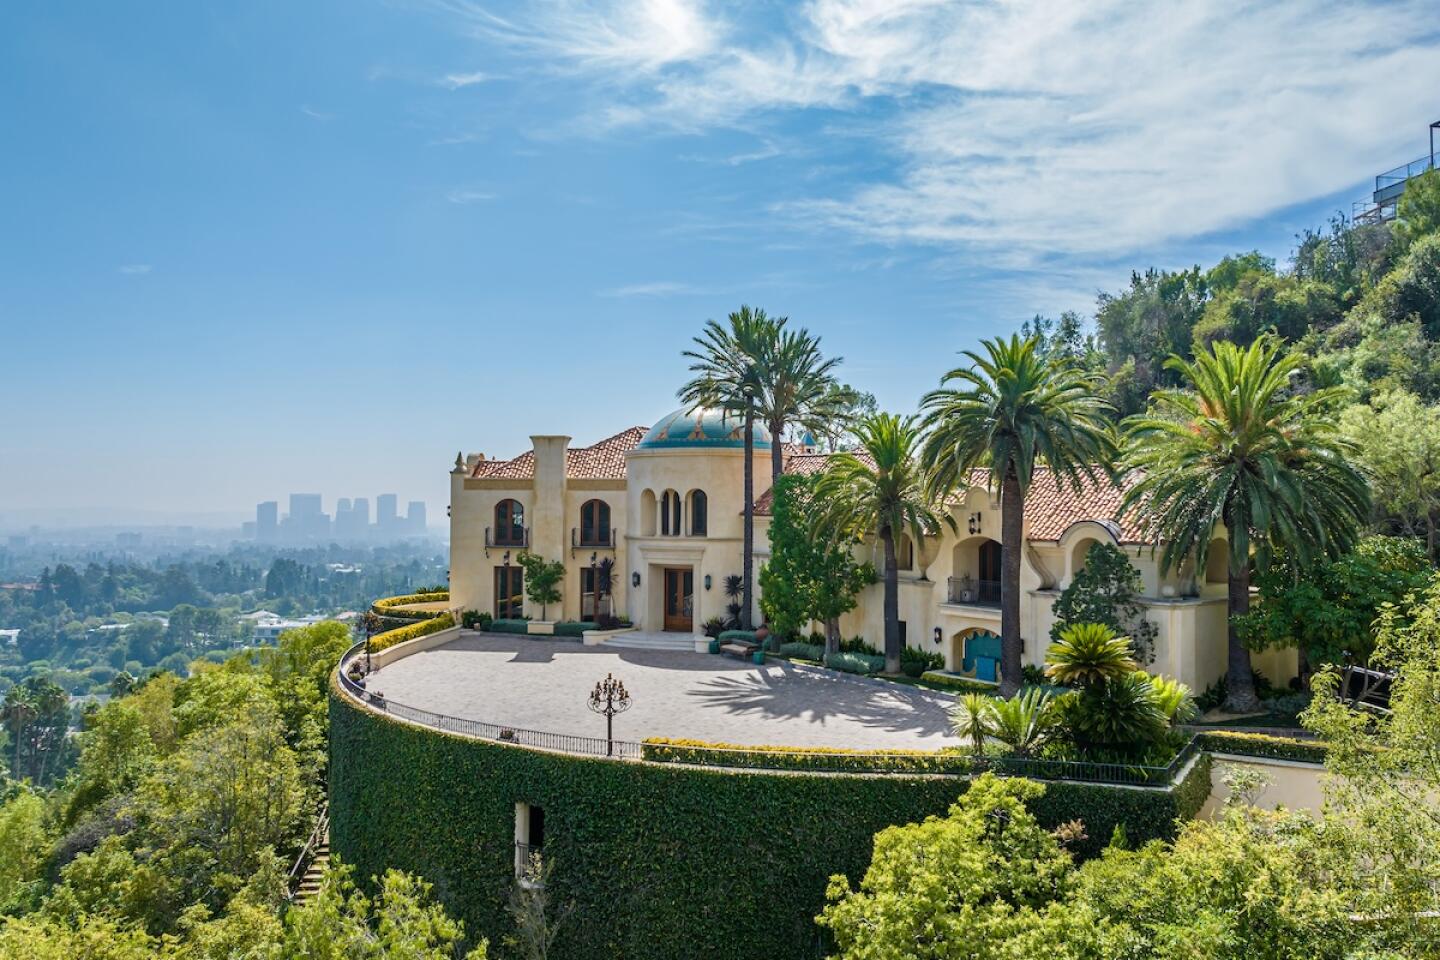 Villa Cielo - Los Angeles Times